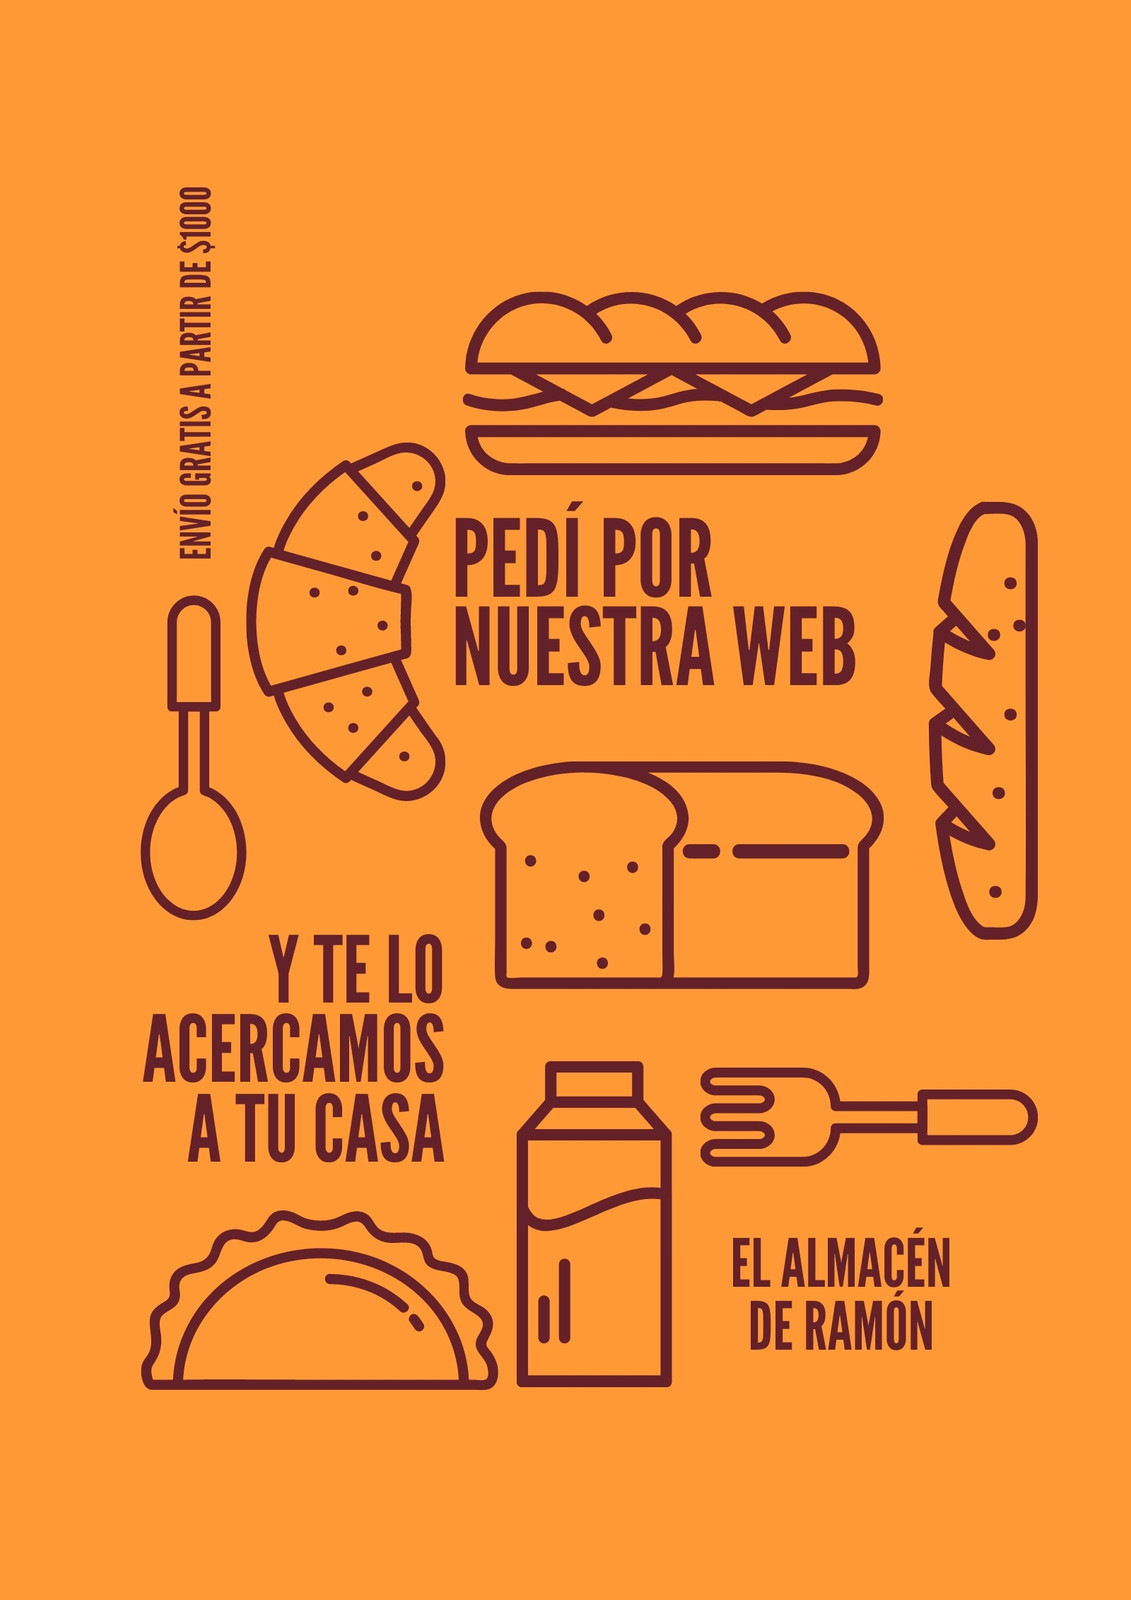 Flyer de diseño minimalista sobre tienda de alimentos online, color naranja y borgoña con alimentos ilustrados